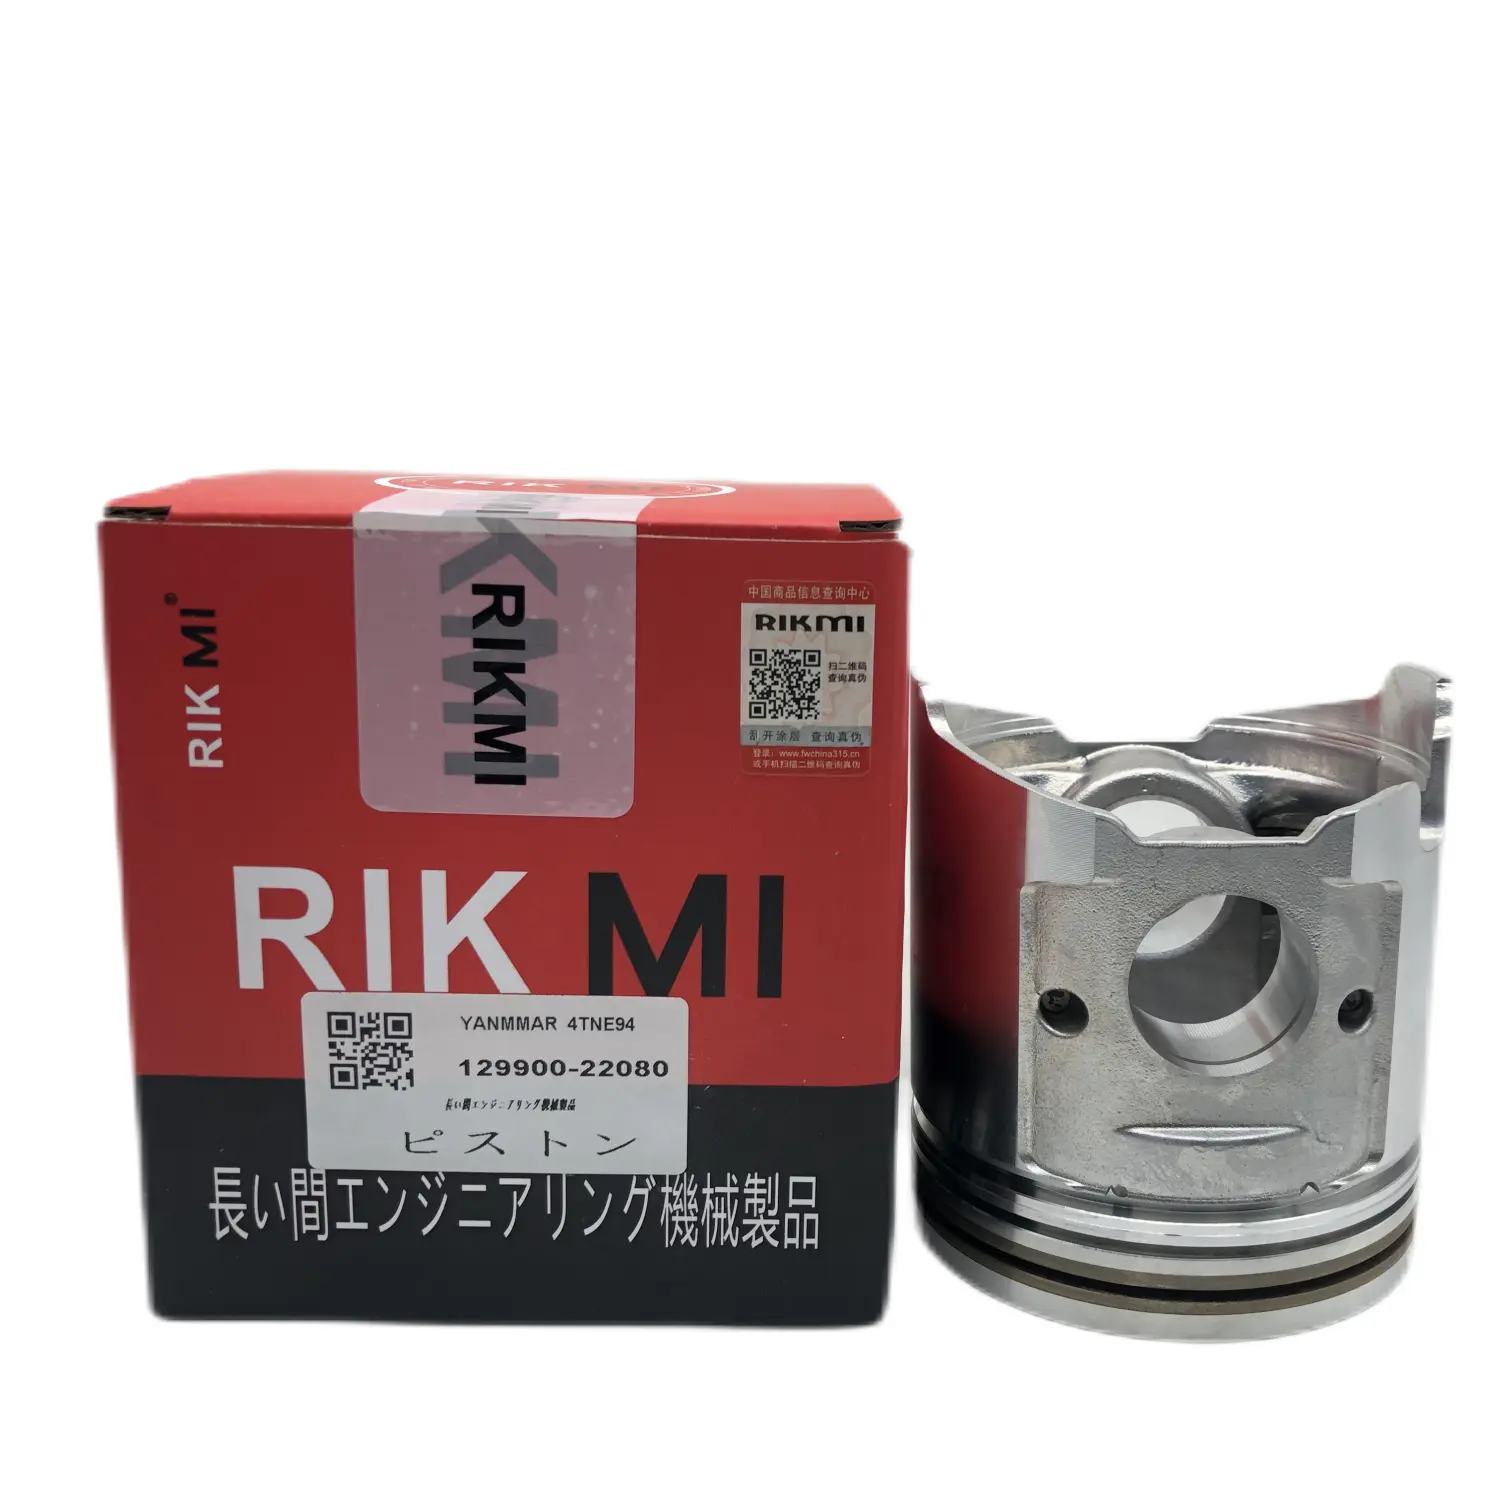 RIKMI-pistón de calidad usado para Yanmar 4TNE94 4tnv98, piezas de repuesto para construcción, 129900-22080